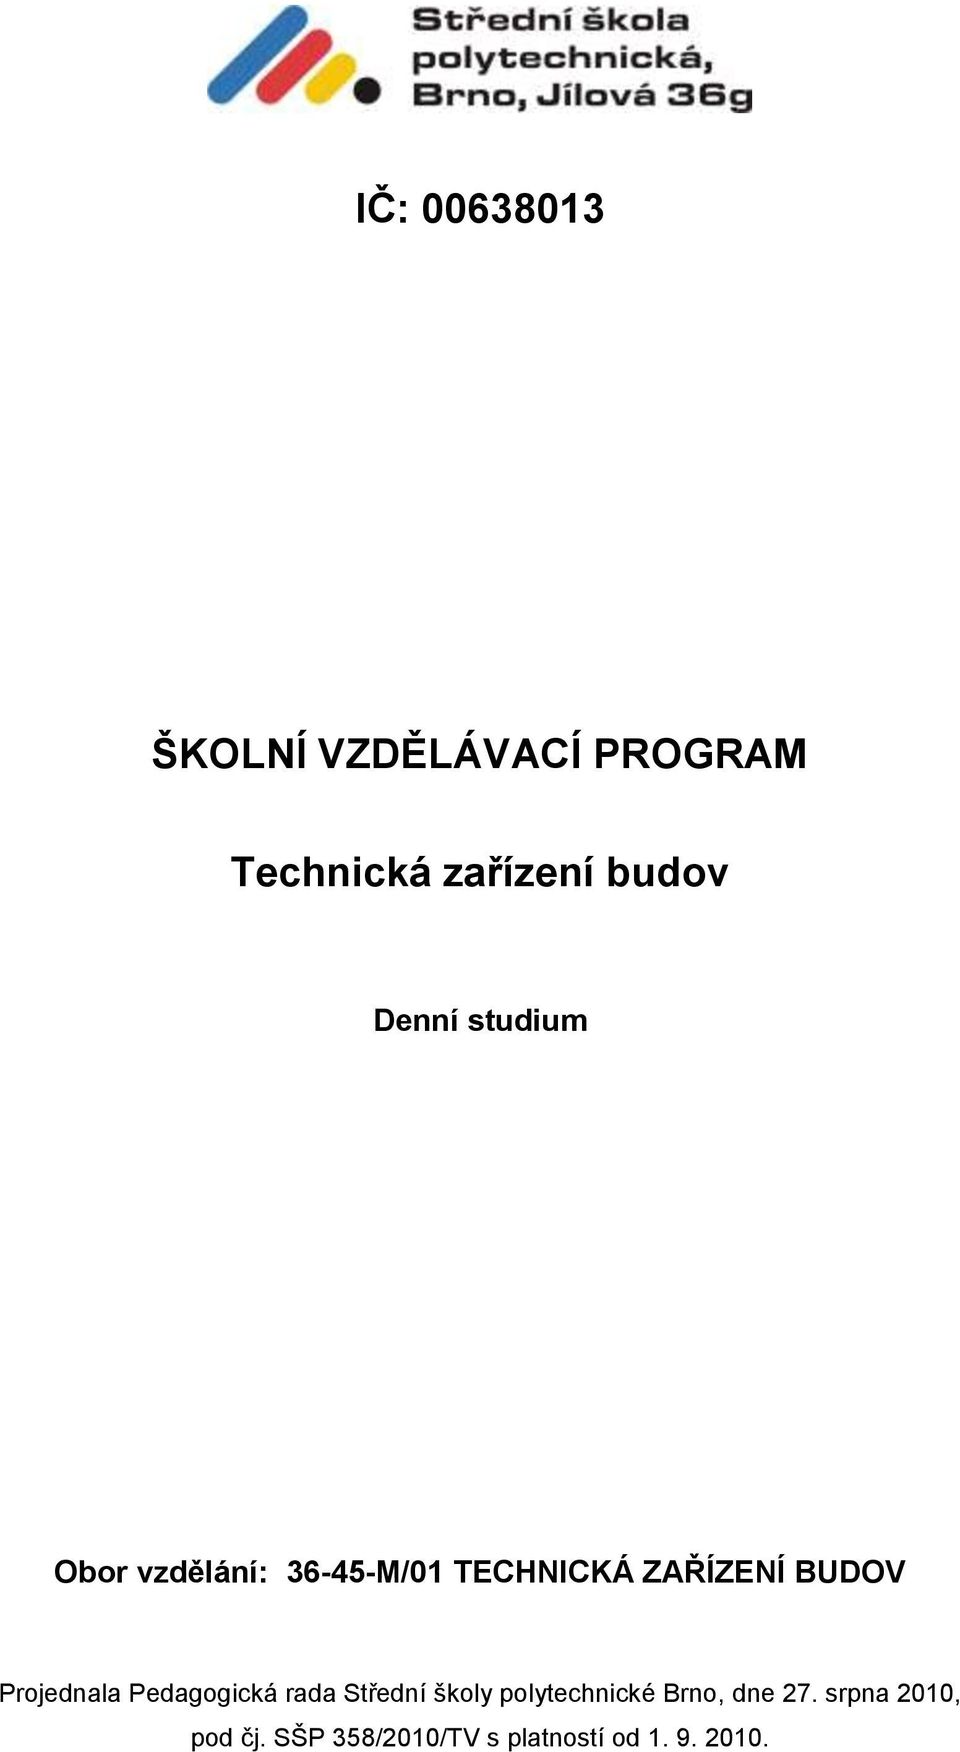 Projednala Pedagogická rada Střední školy polytechnické Brno, dne